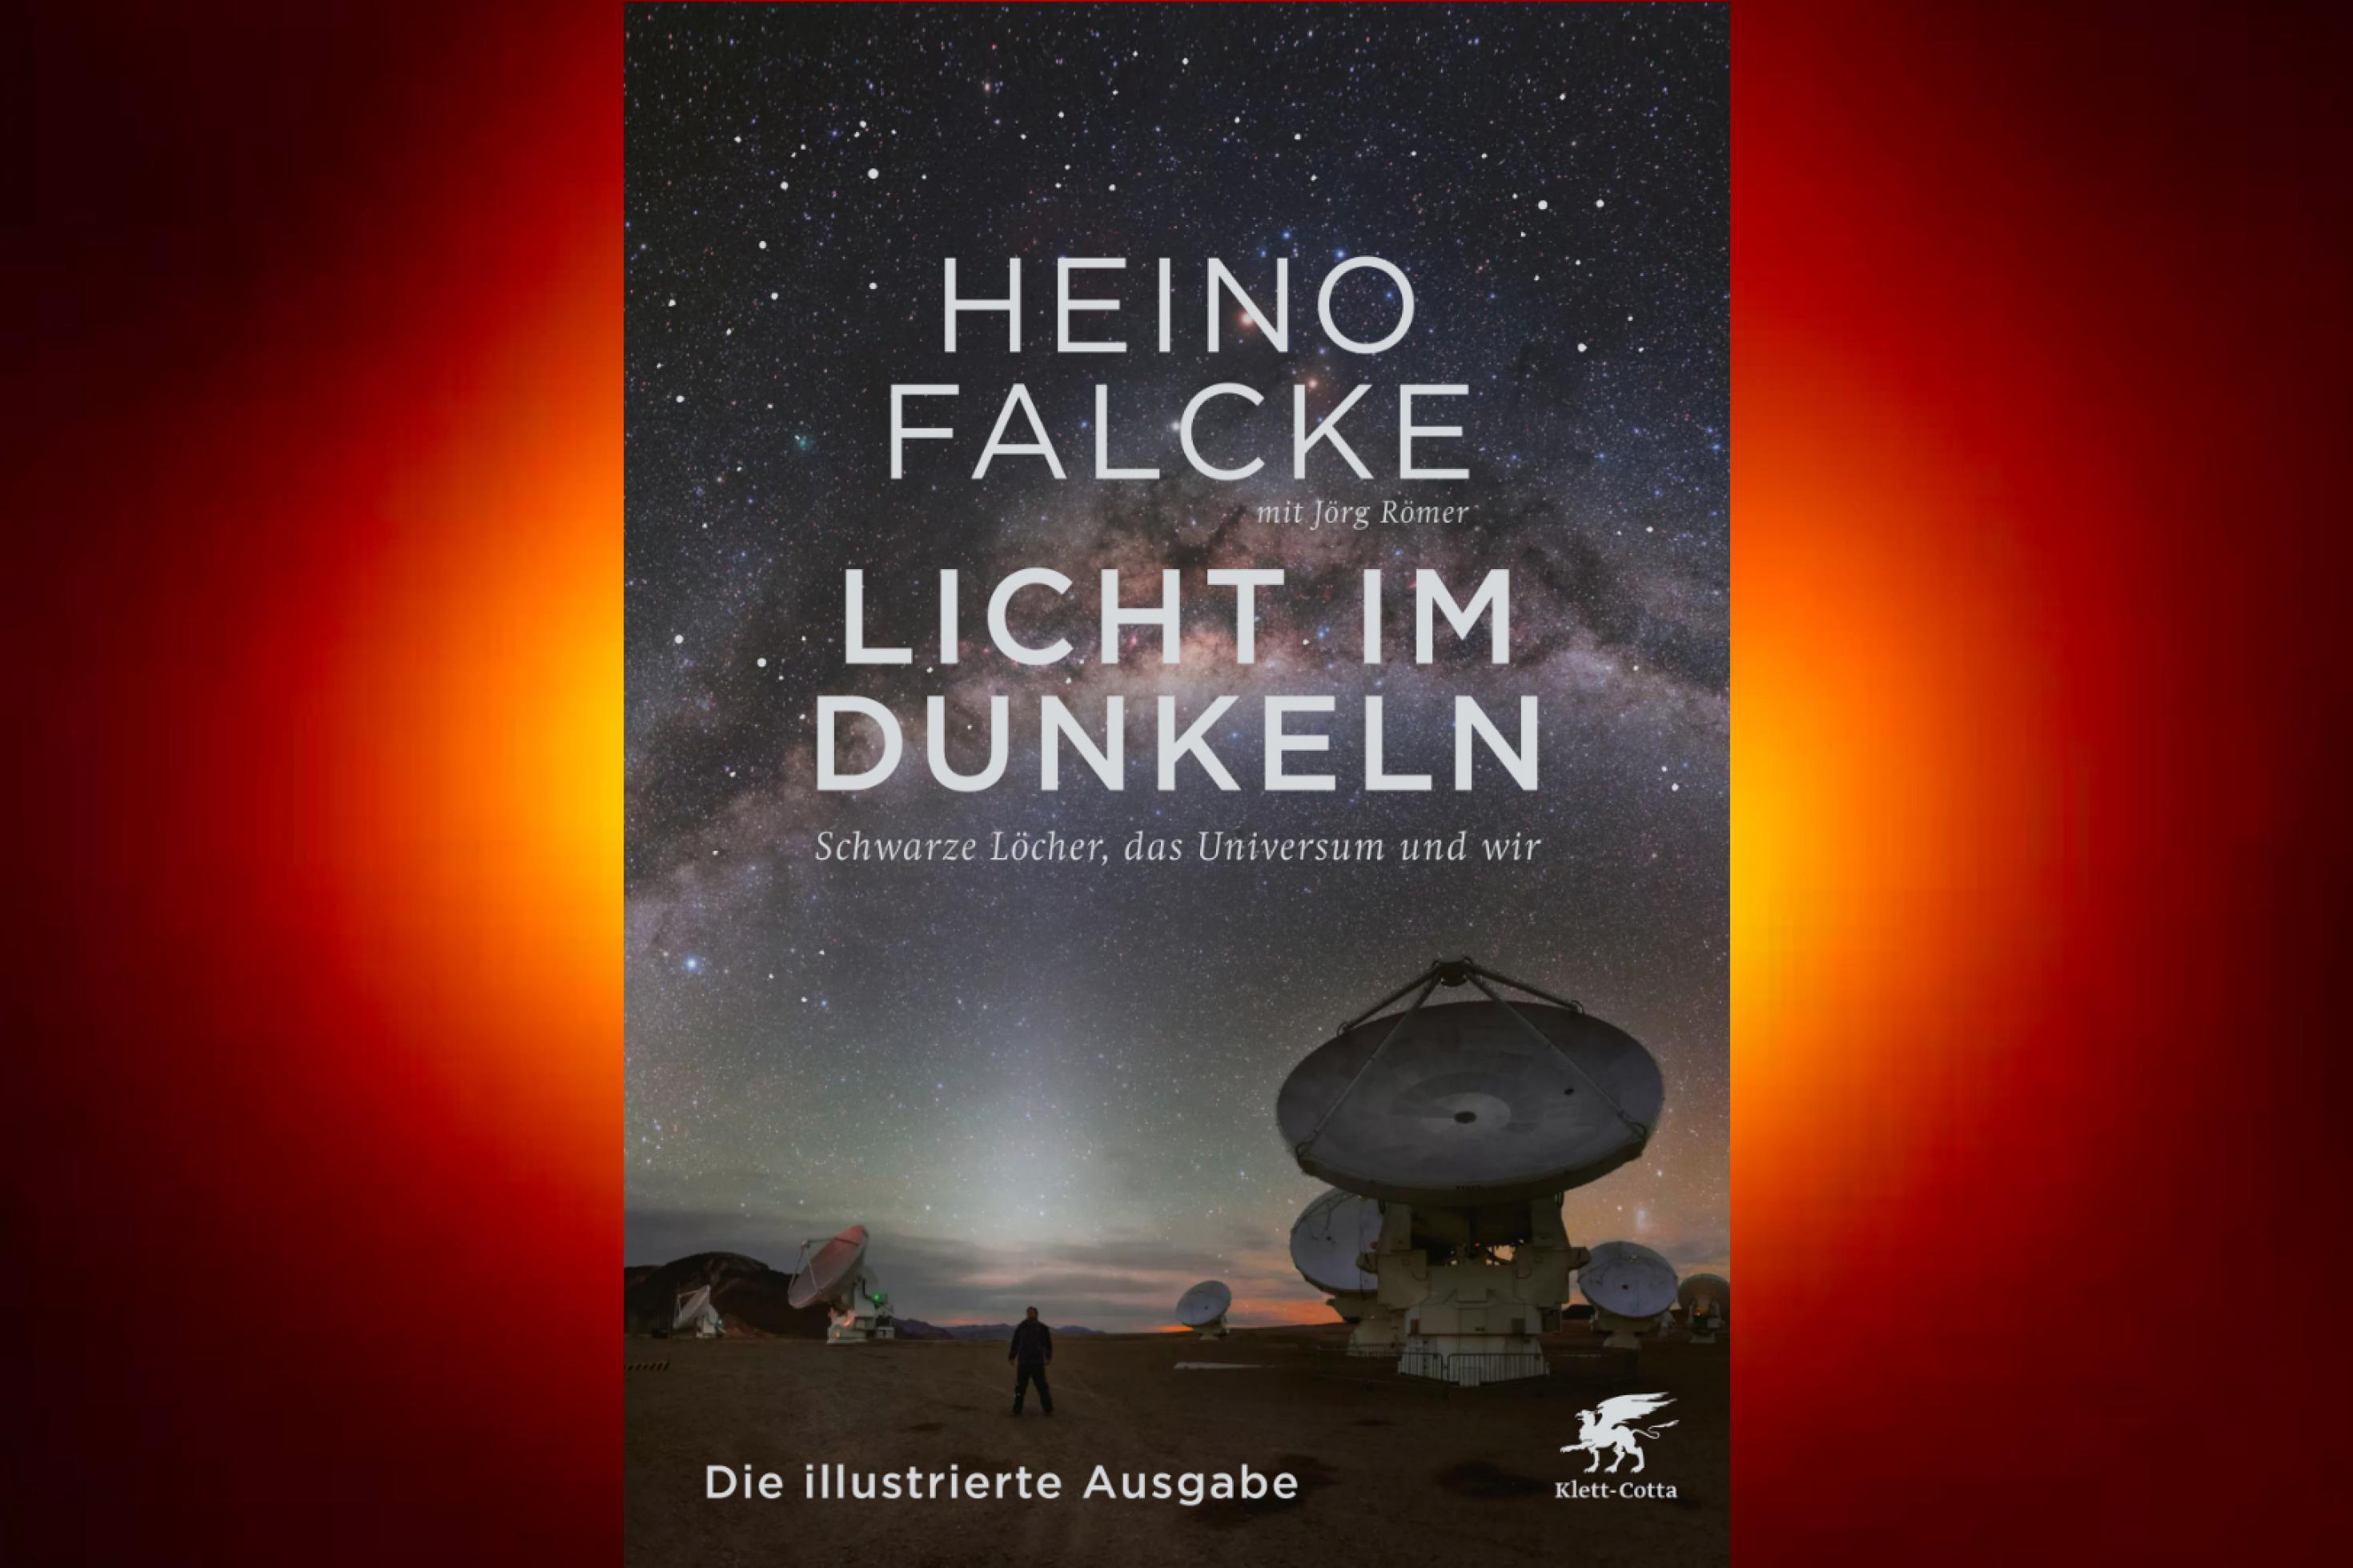 Eine Bildzusammenstellung von Heino Falckes Sachbuch „Licht im Dunkeln“ und der ersten Aufnahme des Schwarzen Lochs M 87*.